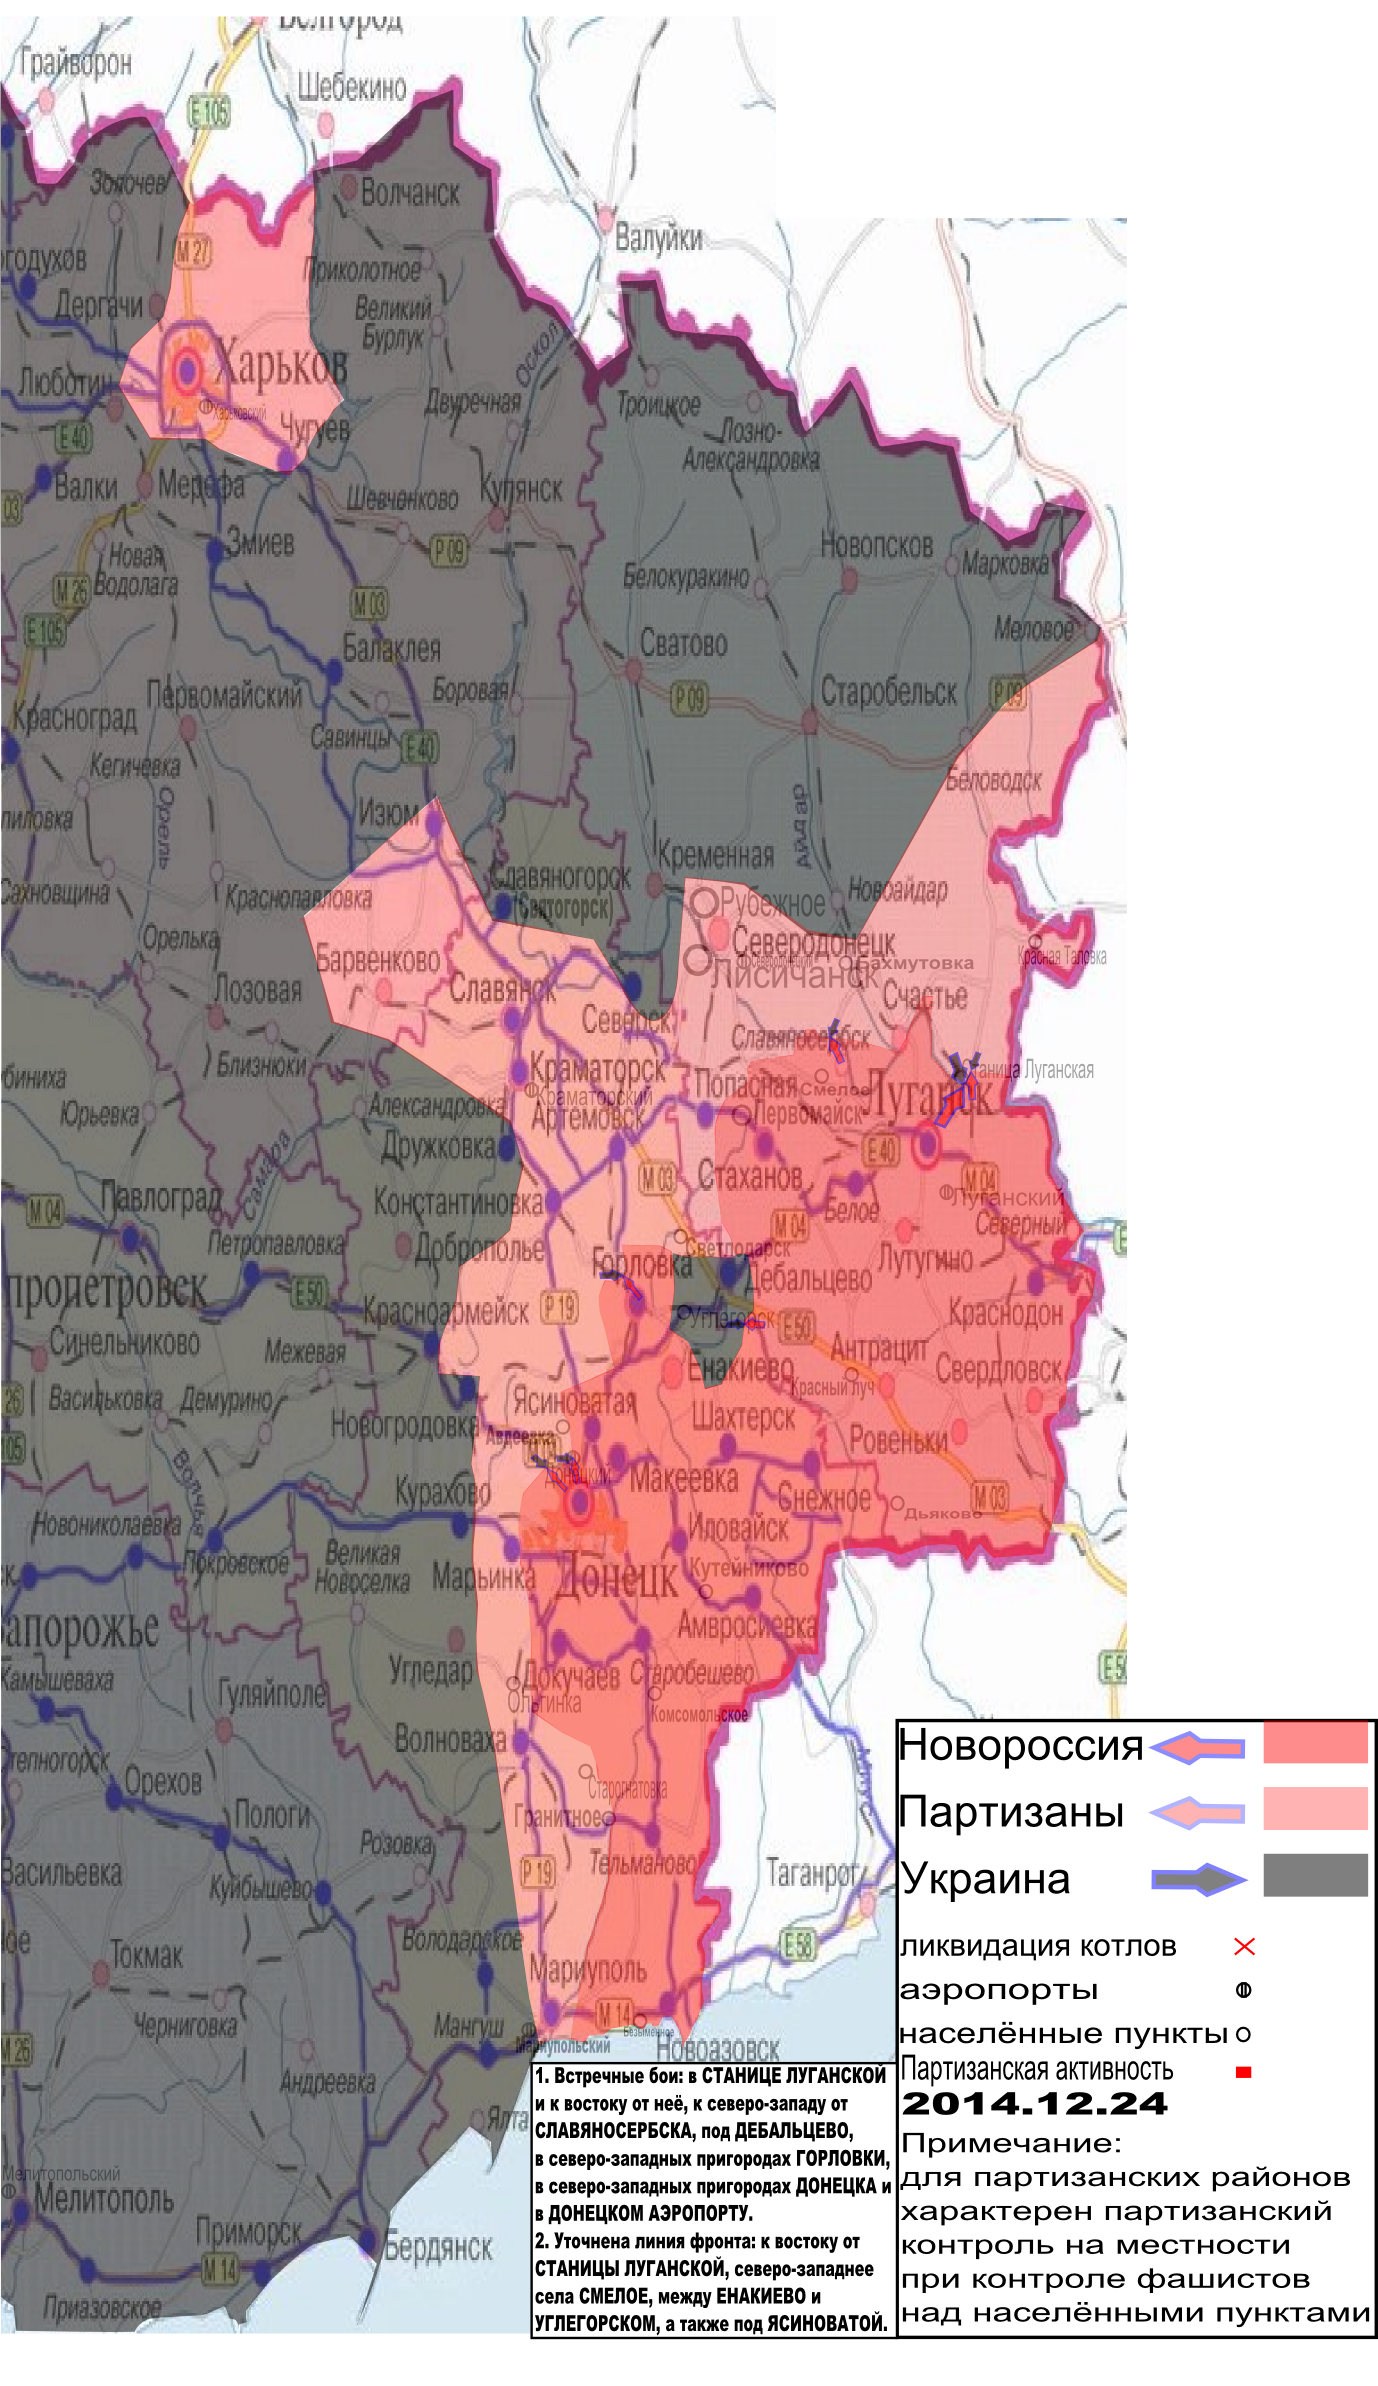 Карта боевых действий в Новороссии с обозначением зон партизанской активности 24 декабря 2014